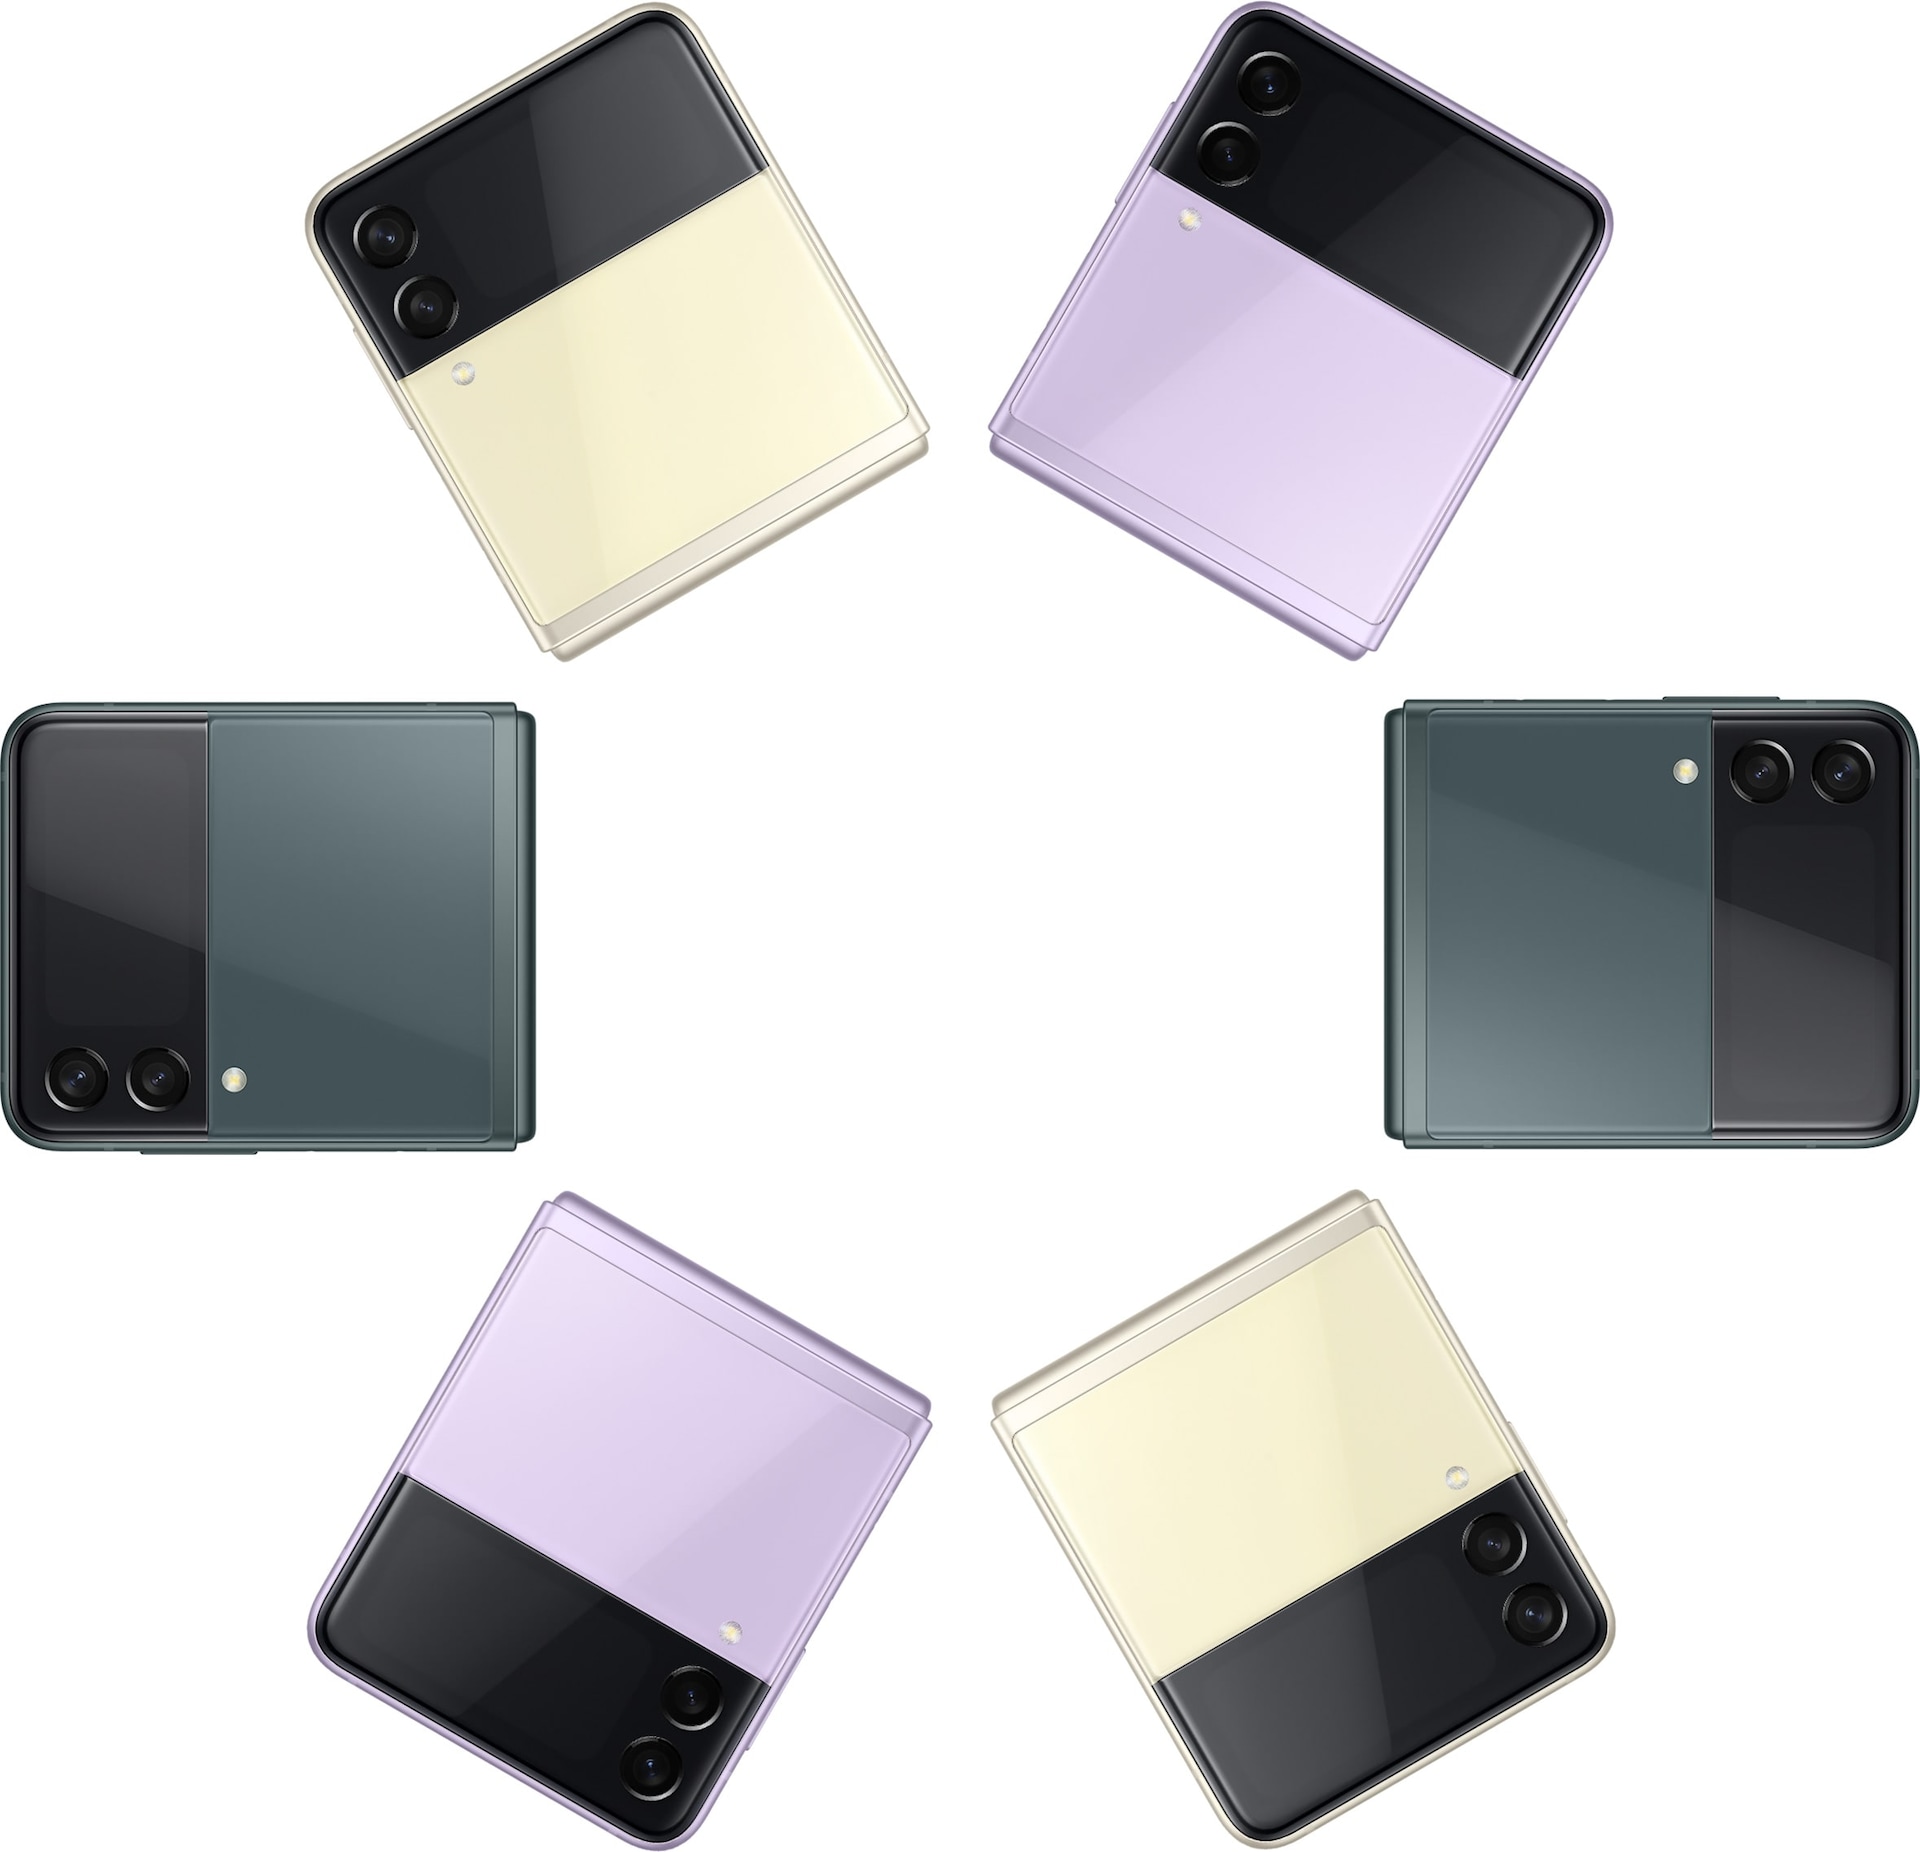 Šest Galaxy Z Flip3 5G telefona preklopljeno je i promatrano sa strane prednje maske. Dva su uređaja krem boje, dva u boji lavande i dva zelene boje, a boje se na svima njima izmjenjuju.